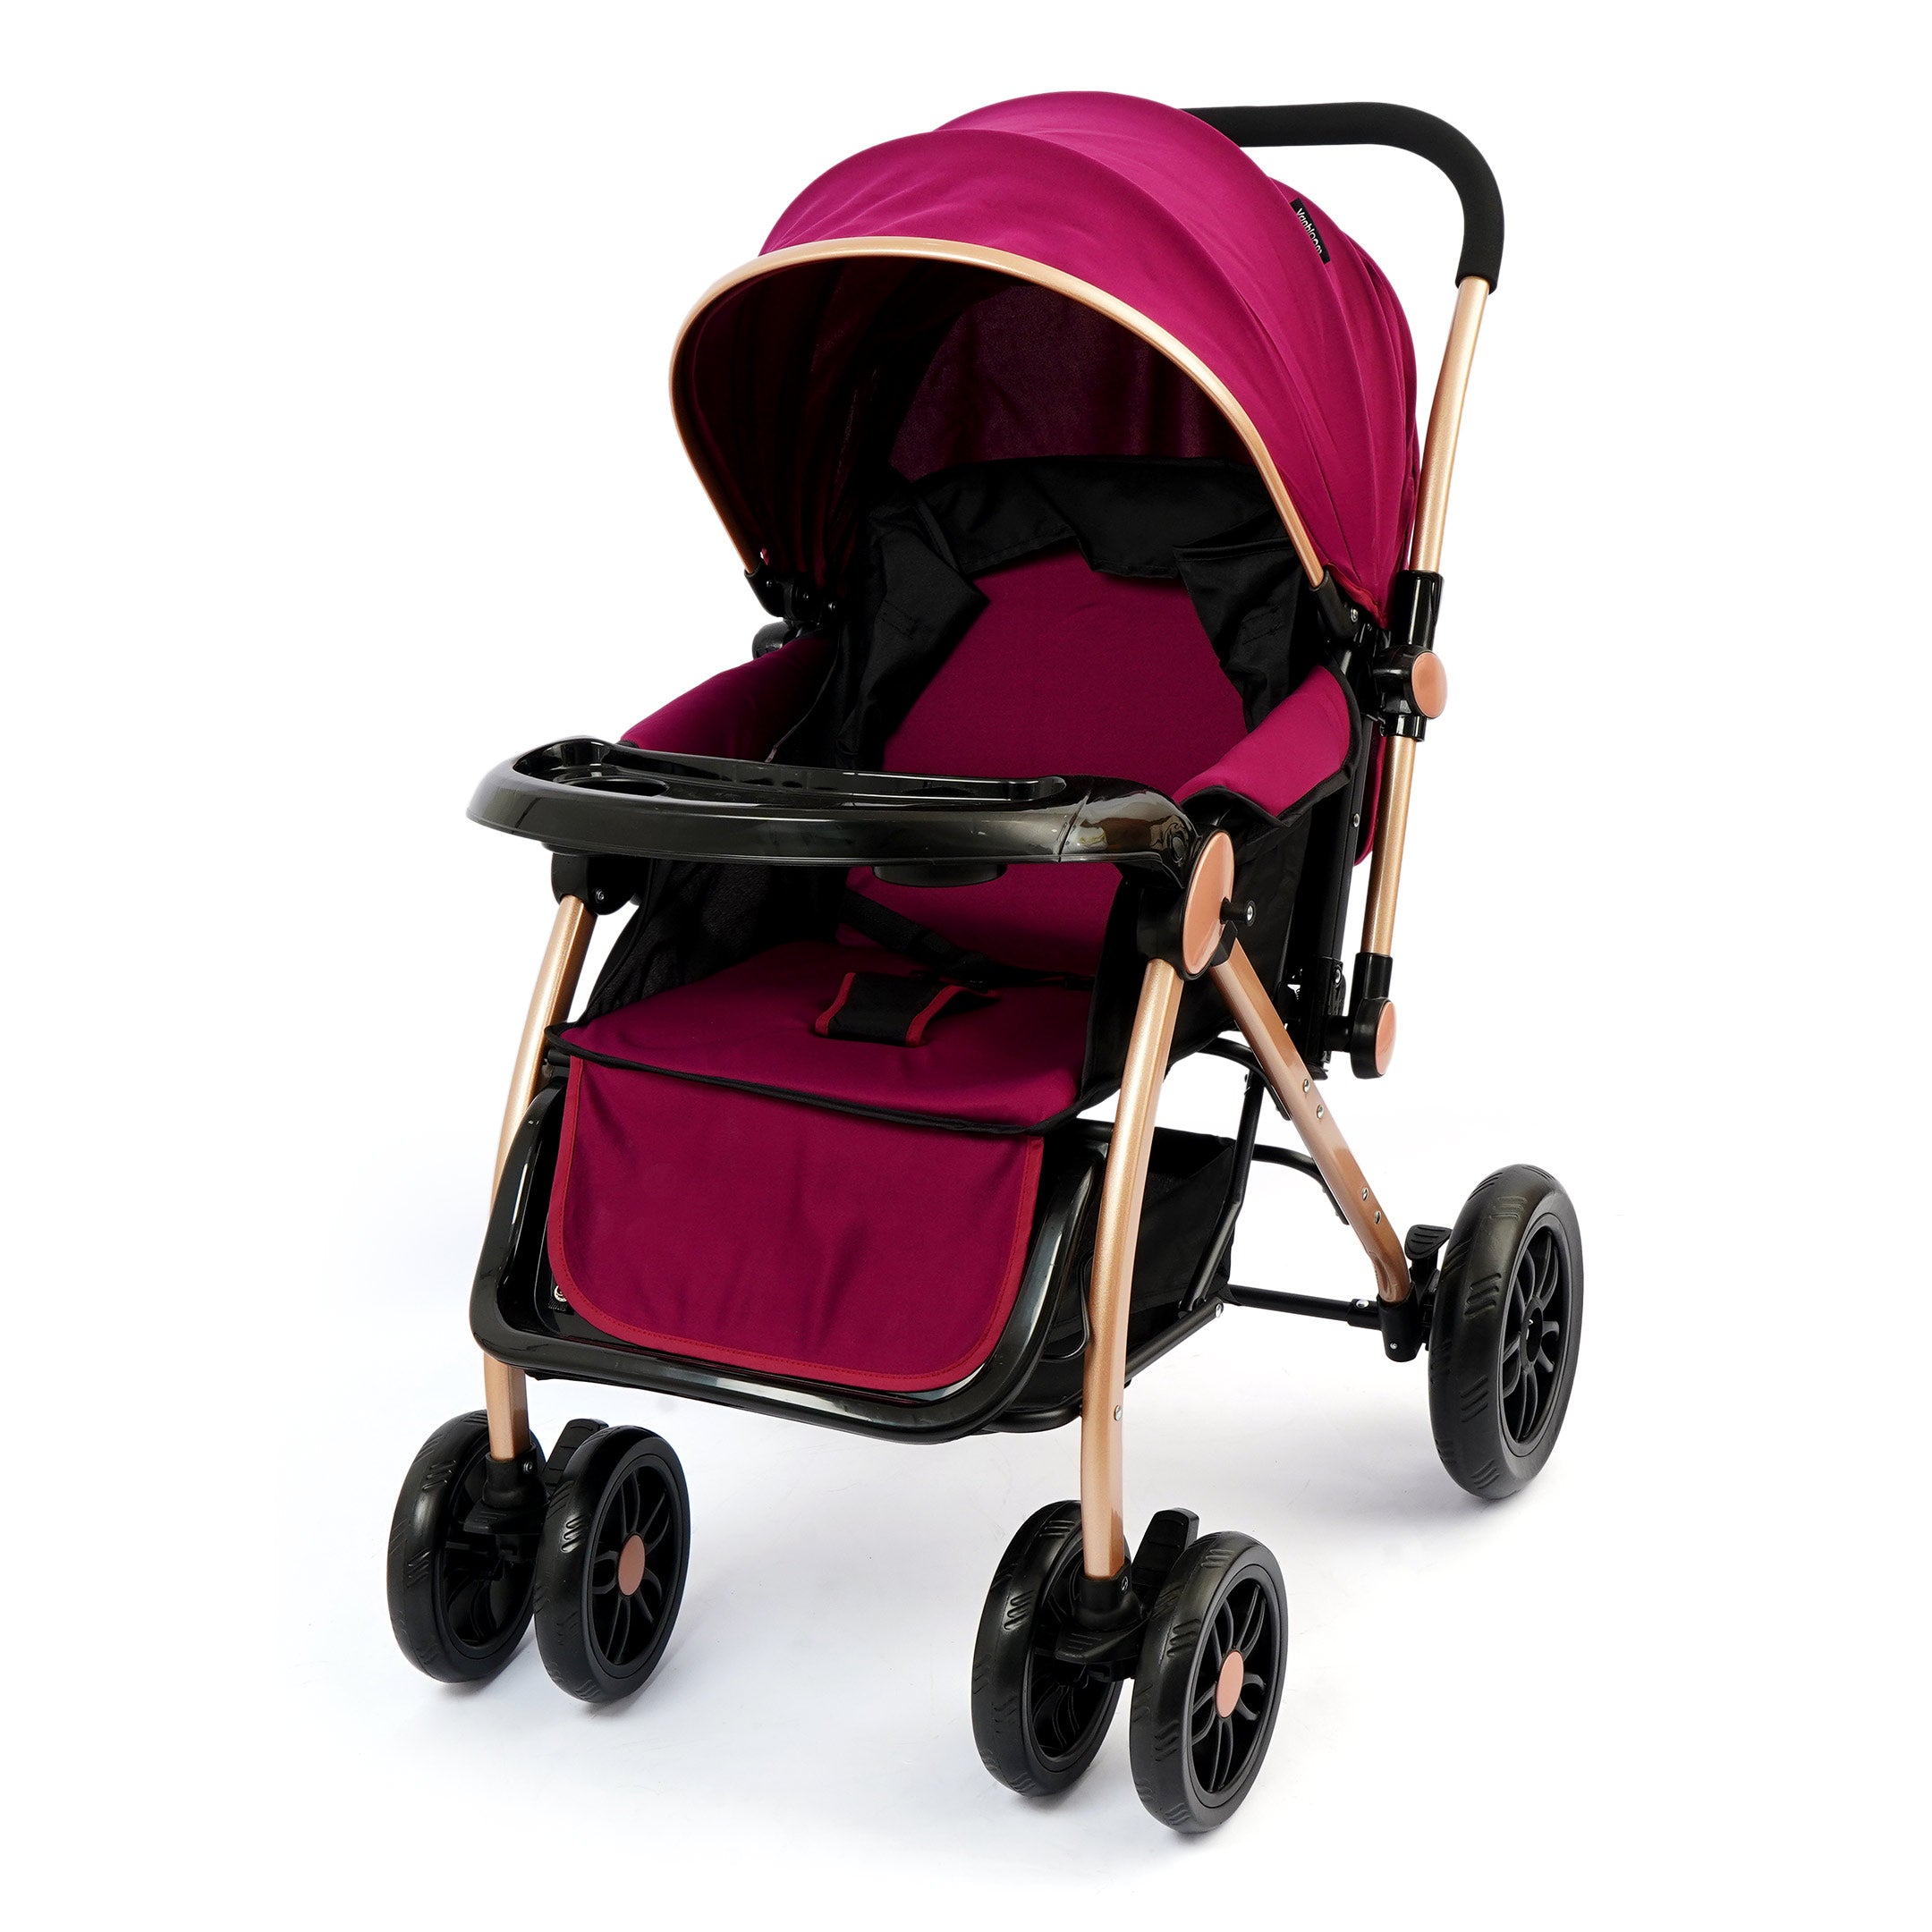 Wanbaom Baby Stroller